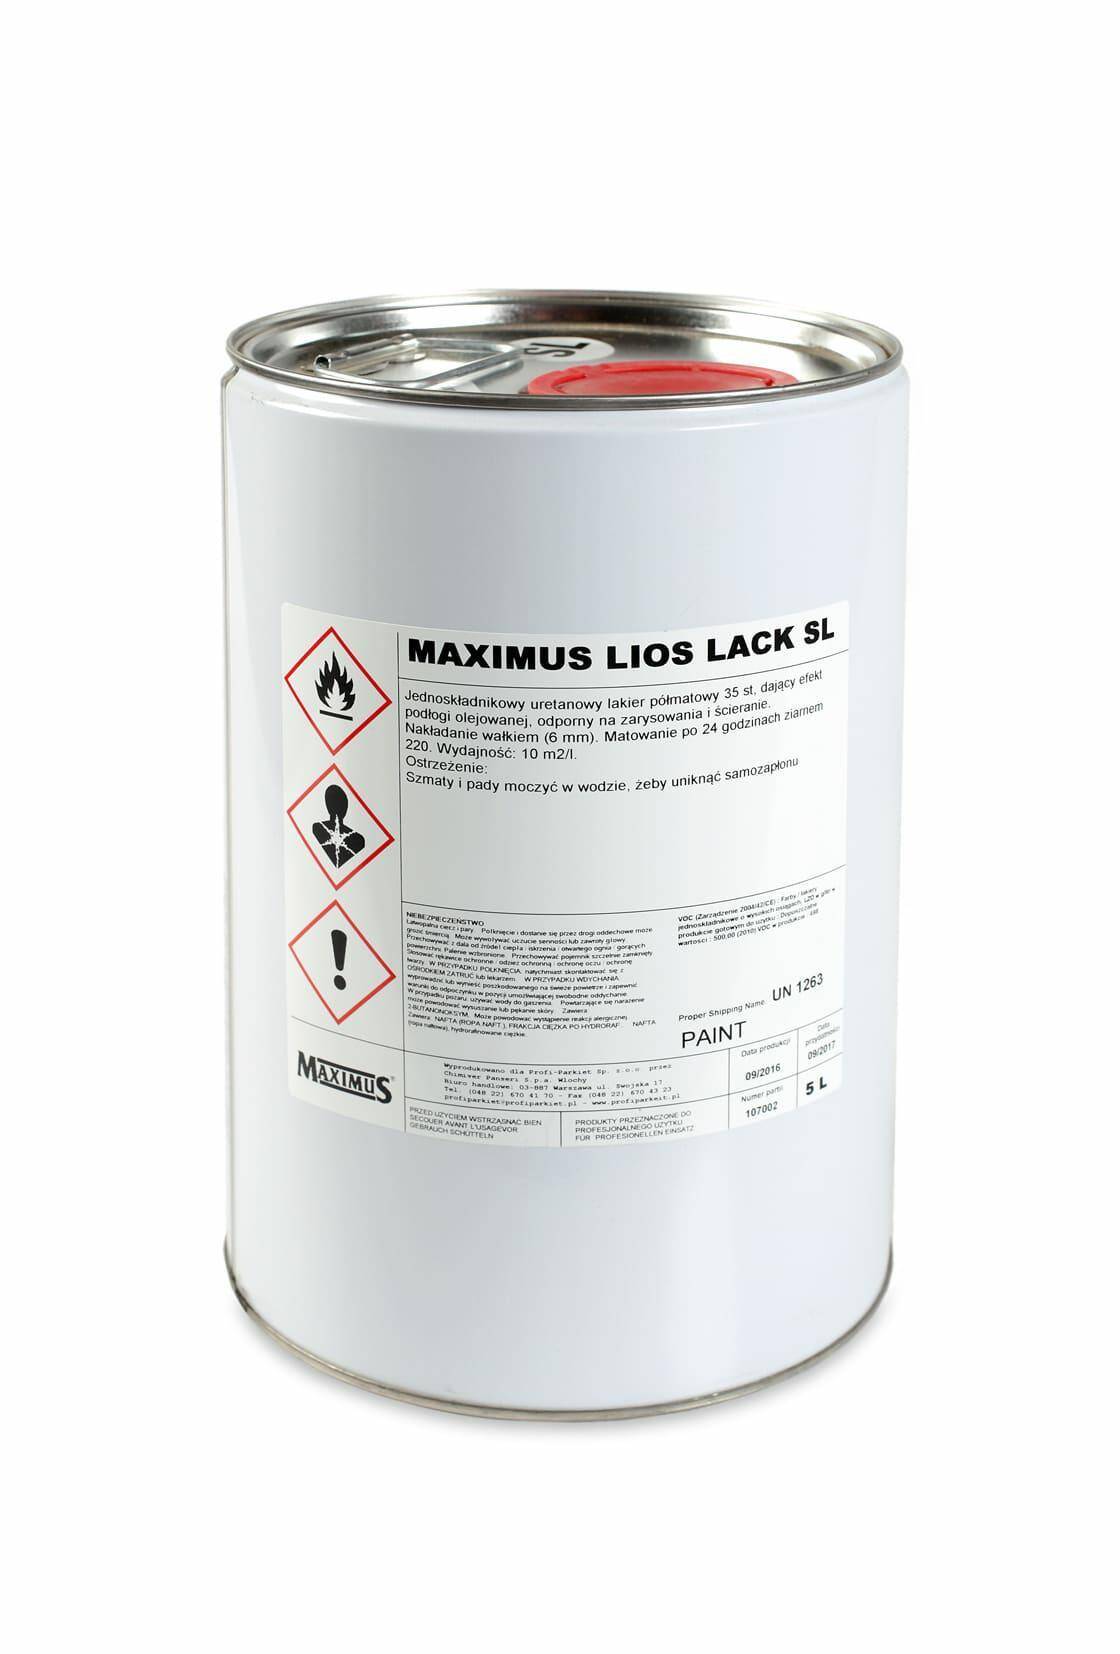 Maximus Lios Lack MAT (5L)